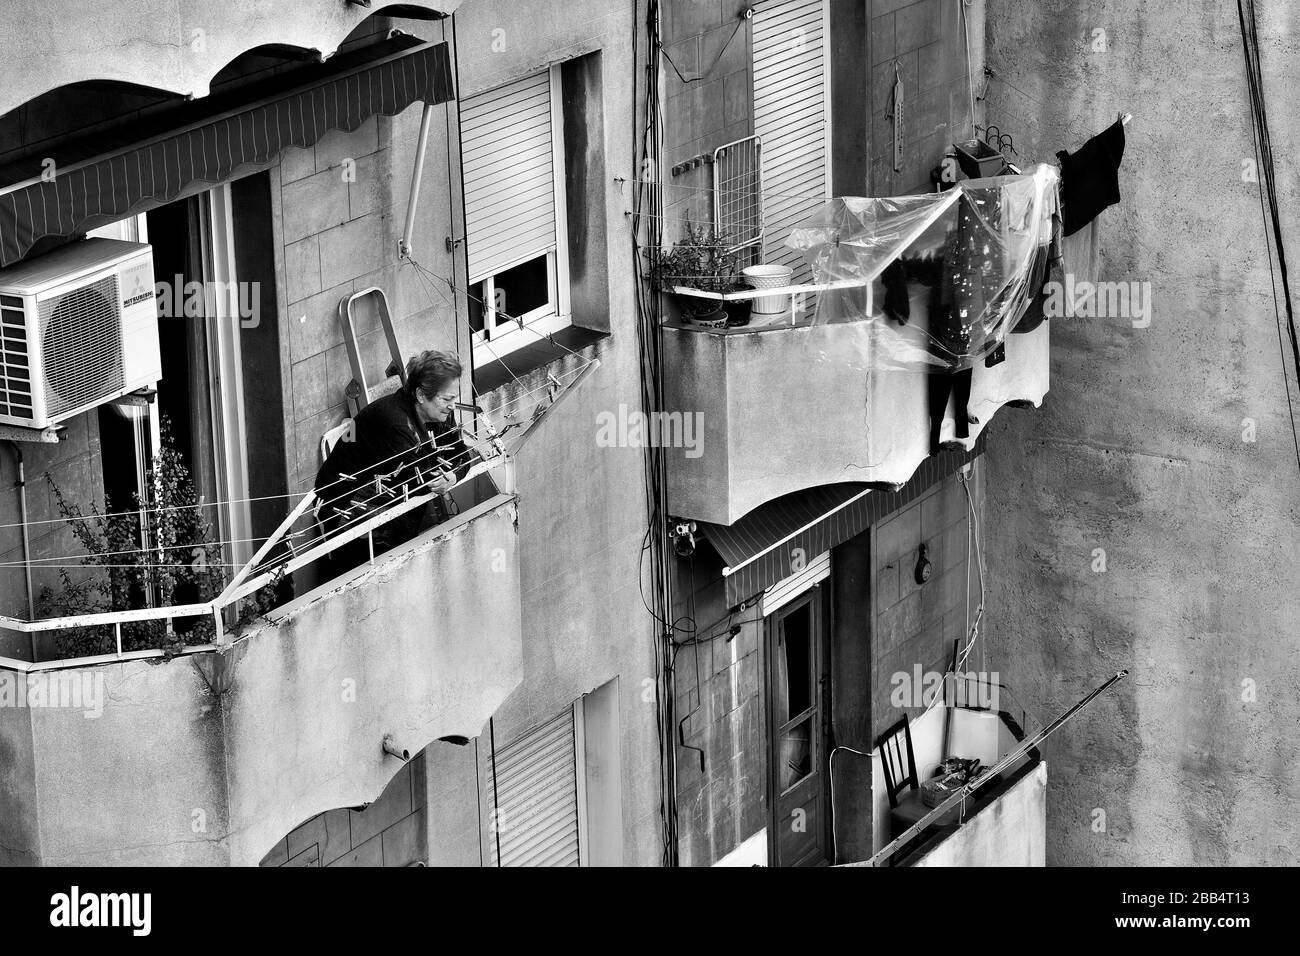 Une vieille femme regarde brièvement de son balcon pendant la deuxième semaine du verrouillage du coronavirus à Barcelone, en Espagne. Banque D'Images